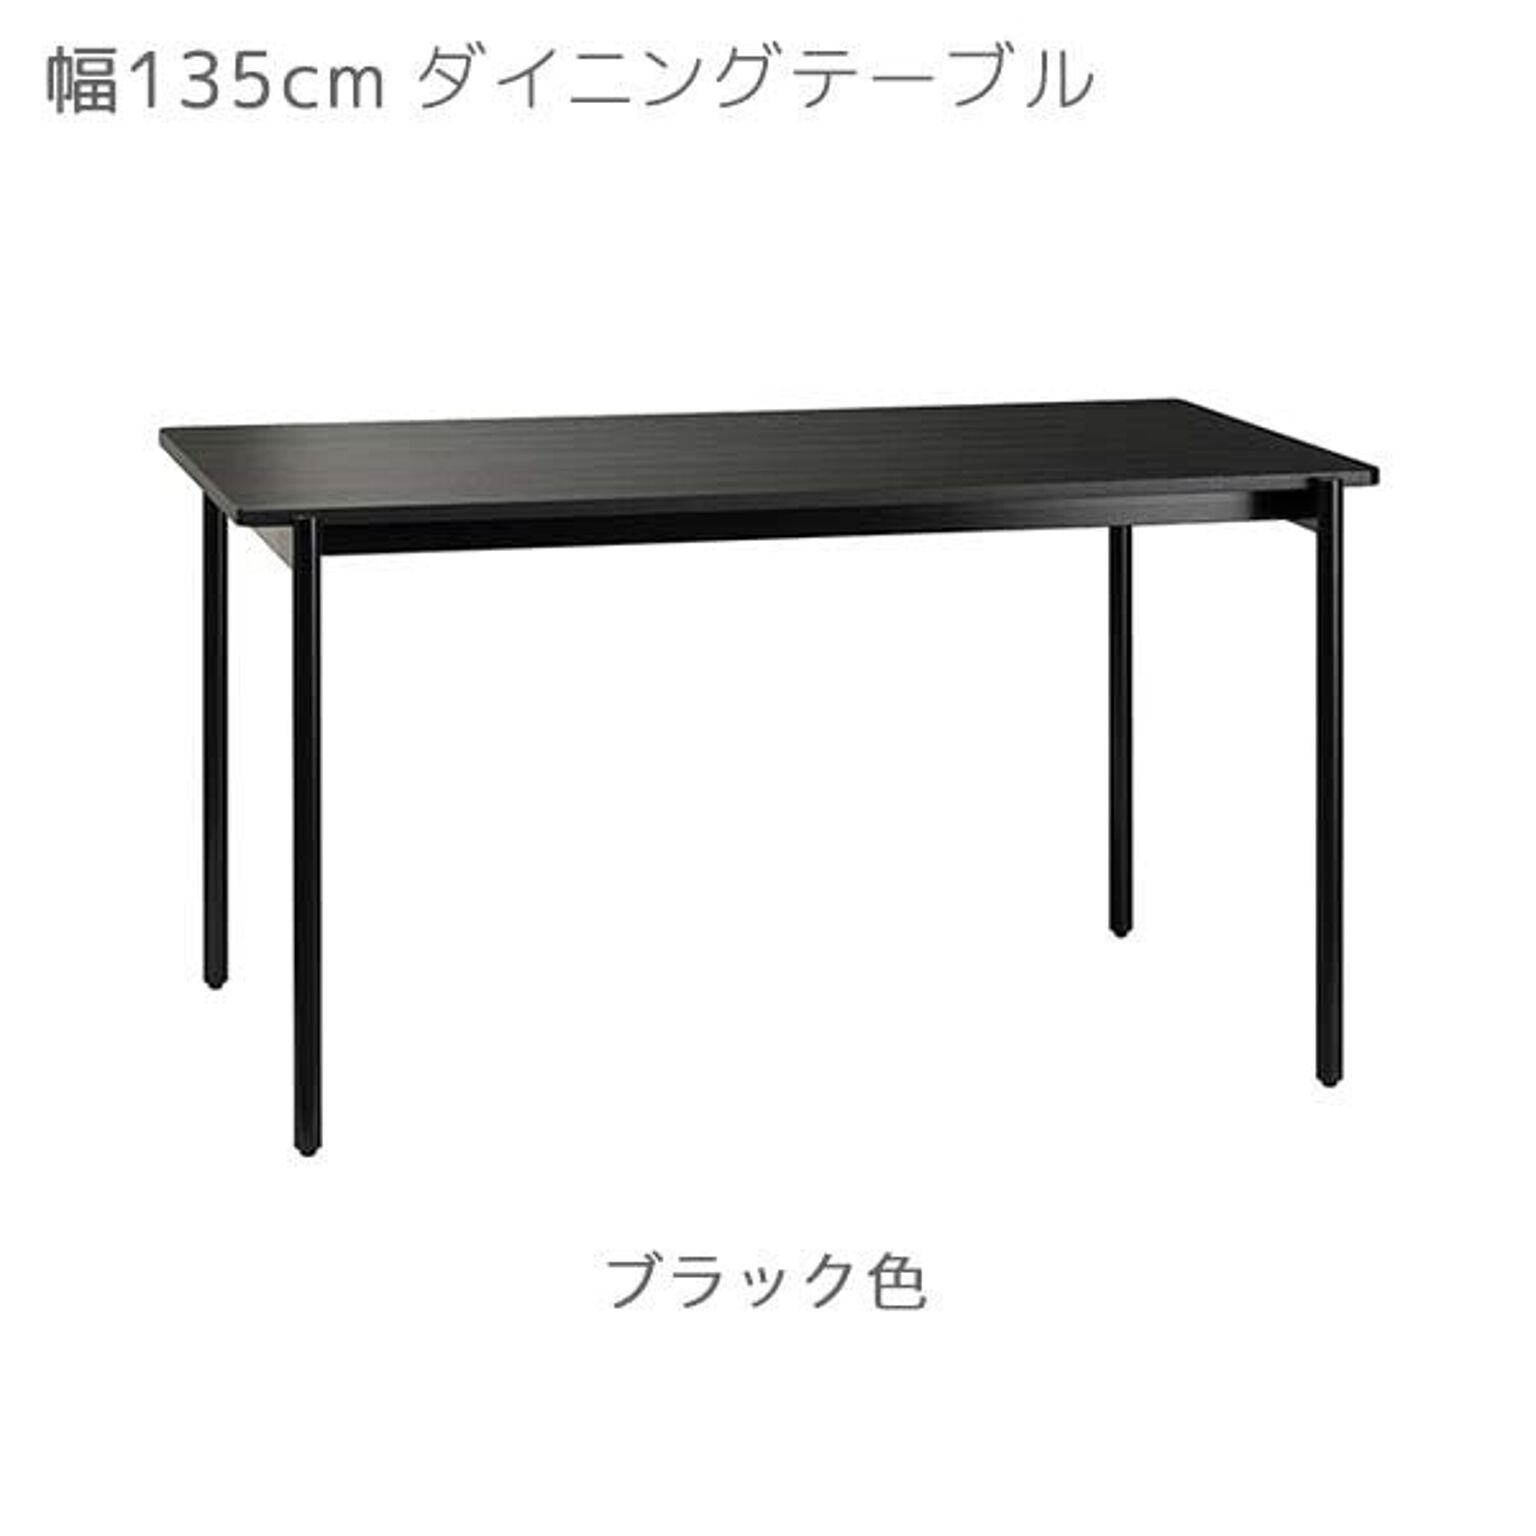 ダイニングテーブル カラー2色 幅135 奥行80 高さ72 ブラック色 ナチュラル色 食卓 テーブル CHARME シャルム CHM-135